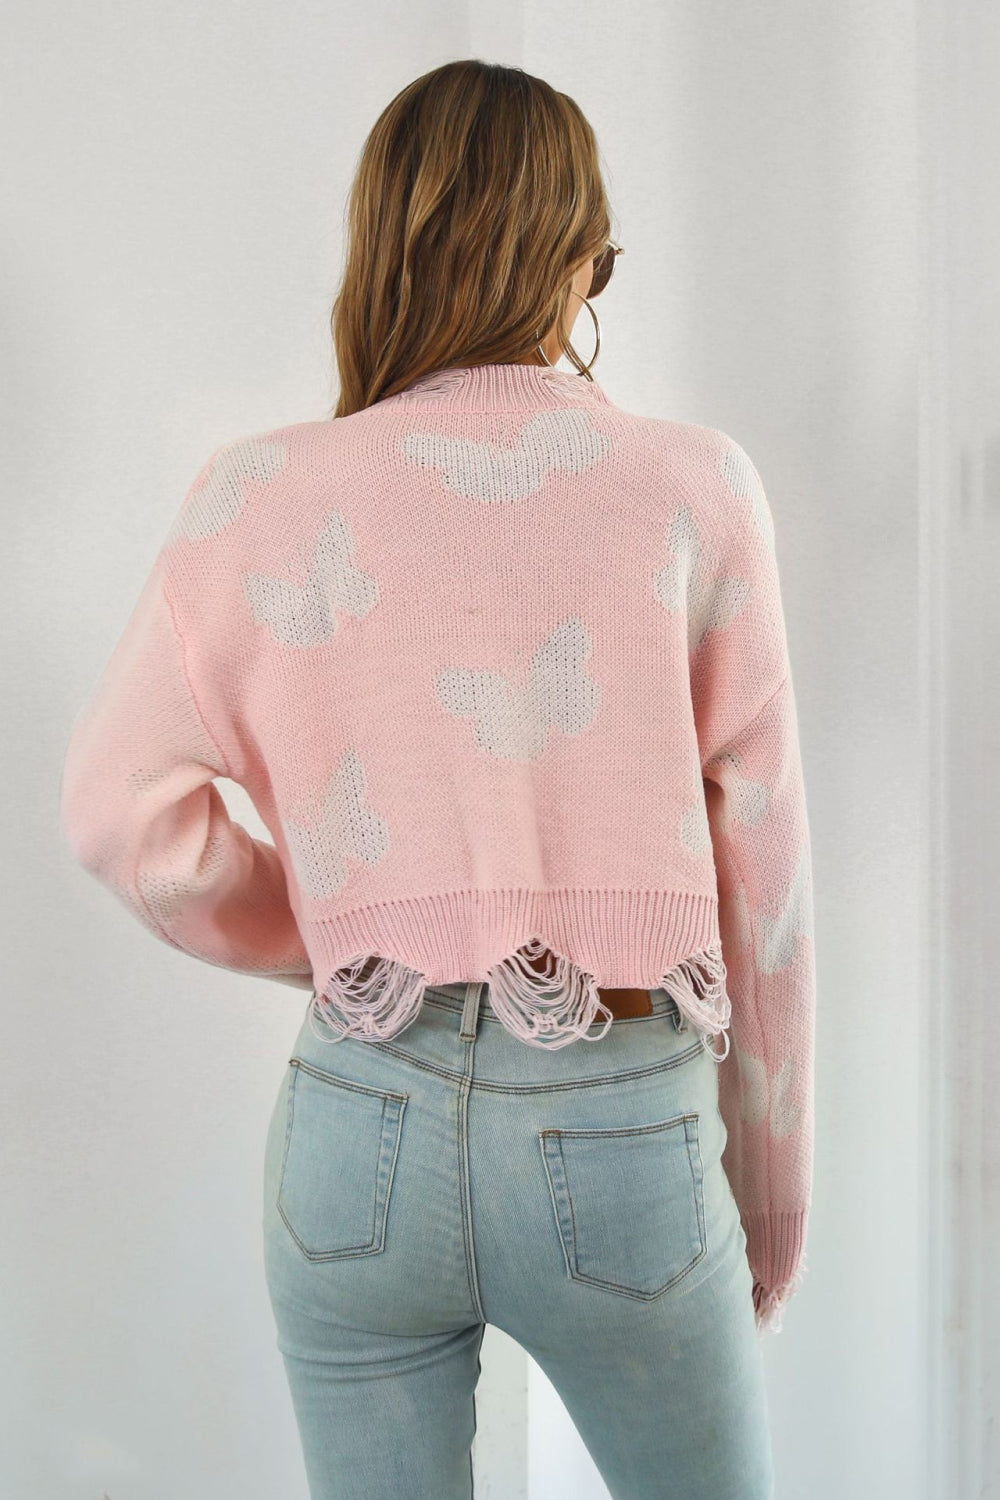 NatashaJay Printed Round Neck Ribbed Long Sleeve Sweater 🦋